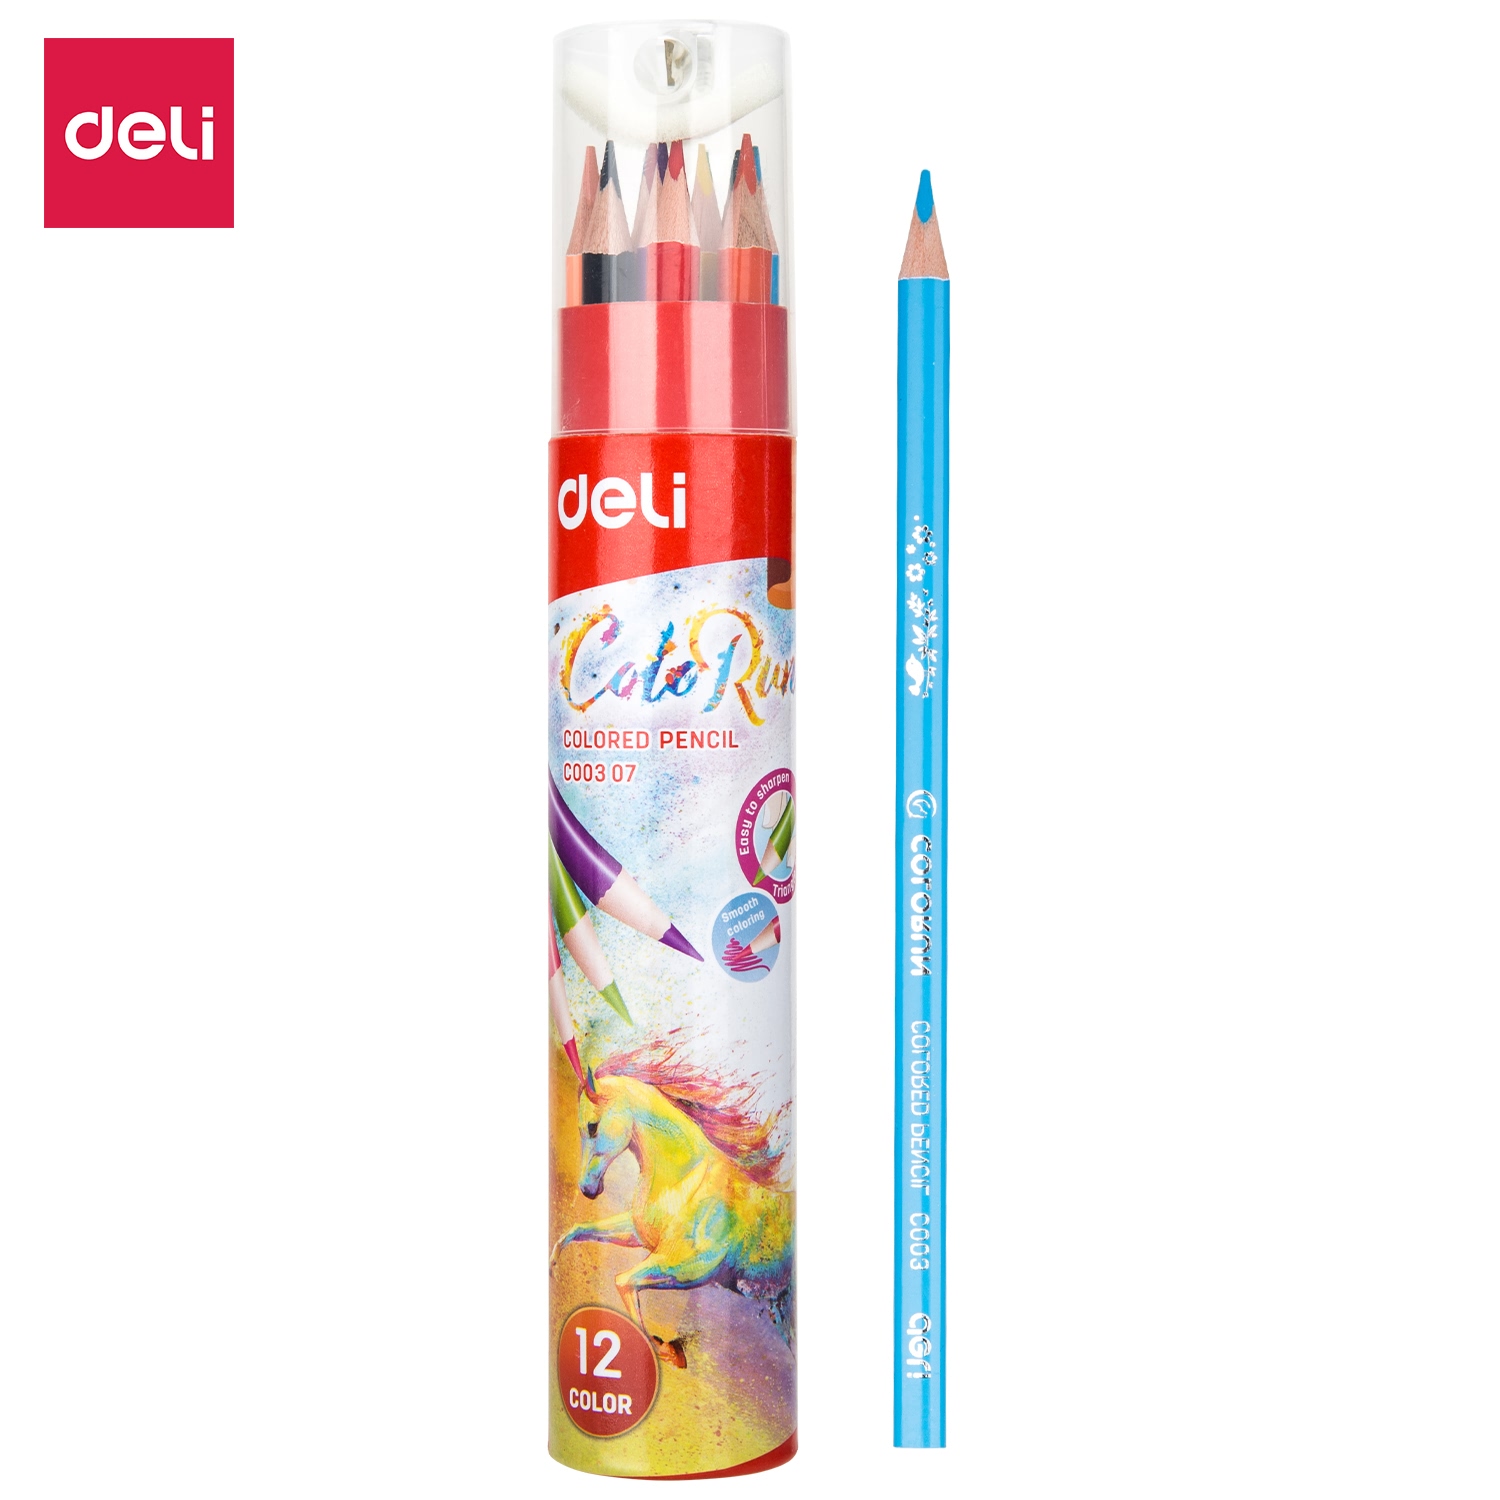 ดินสอสี 12 สี 24สี 36สี แบบแท่งยาว และ แบบ 2 หัว พร้อมกล่องใส่น่ารัก มีกบเหลาให้พร้อม Colour pencil